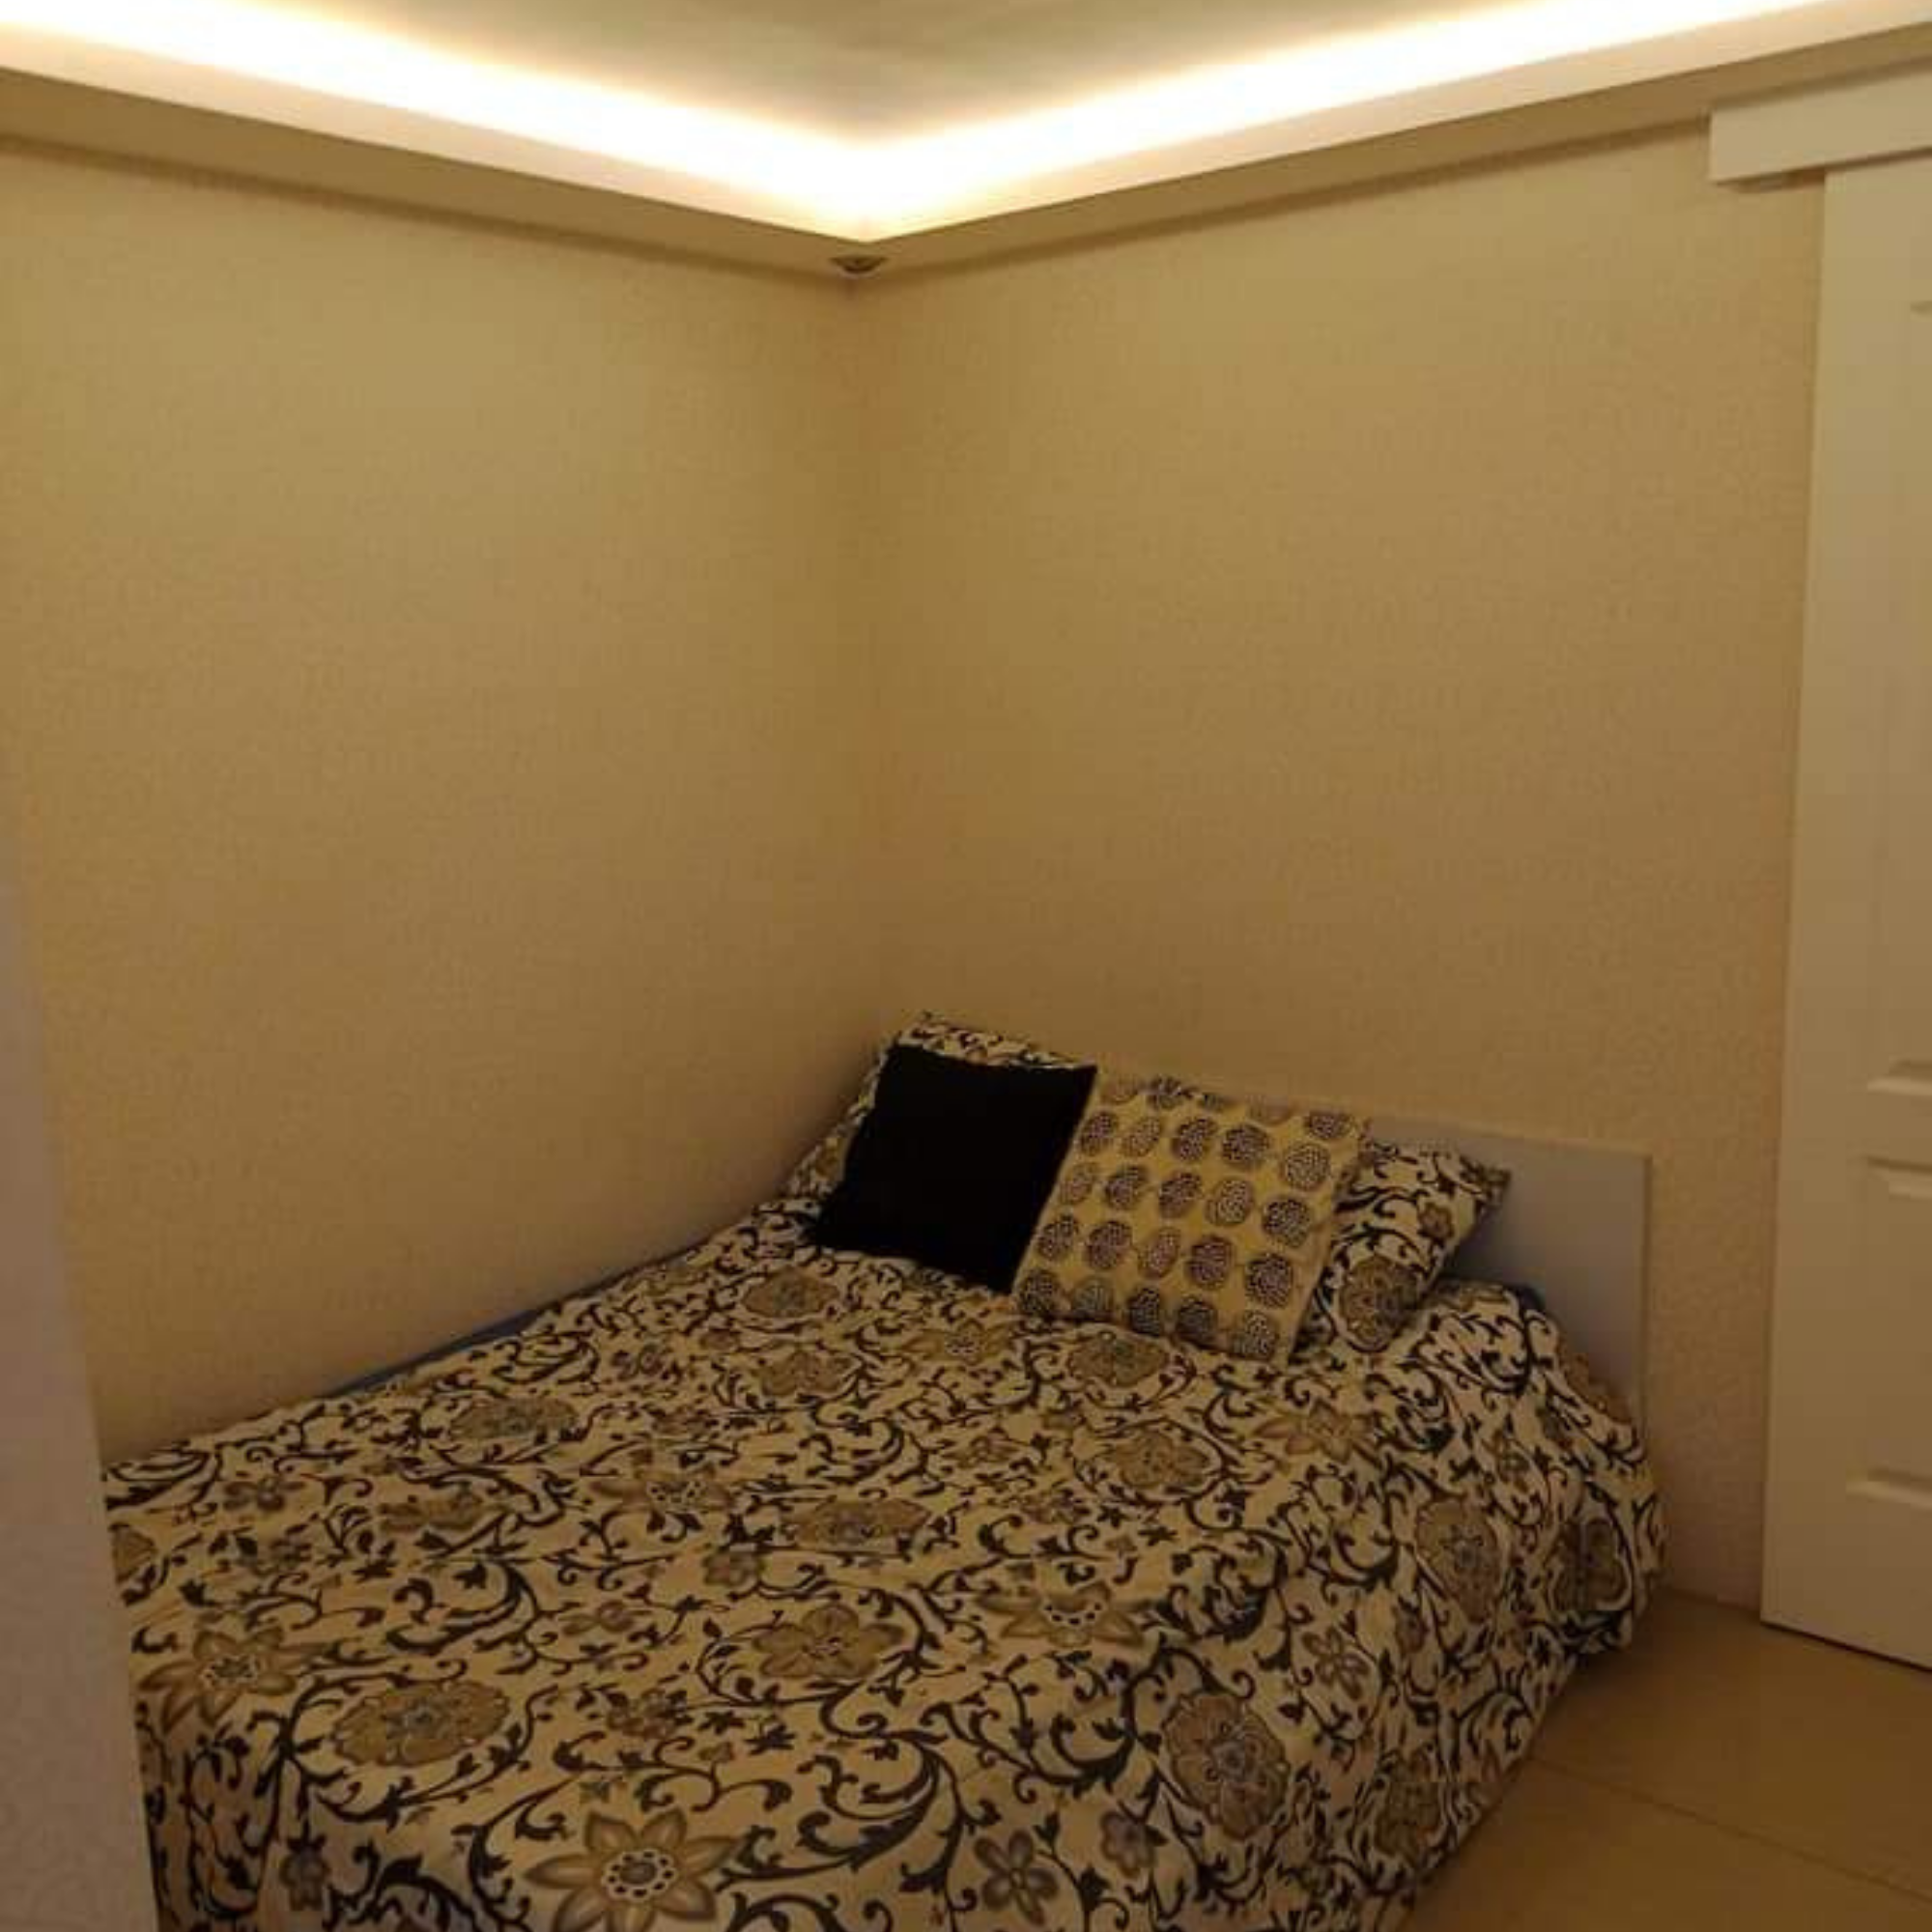 2 Bedroom Condo Unit in Imus Cavite